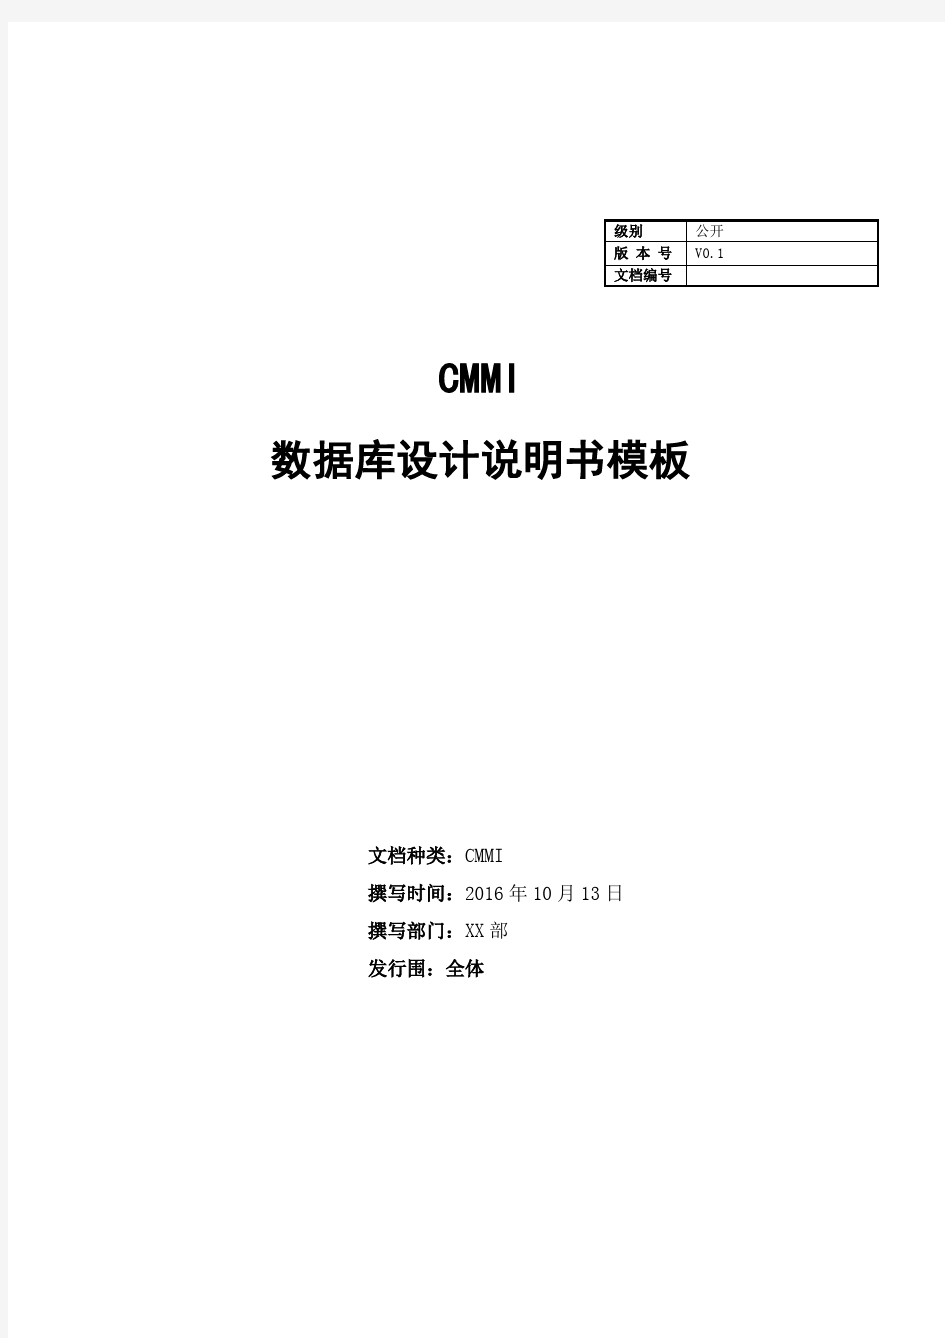 CMMI数据库设计说明文书模板